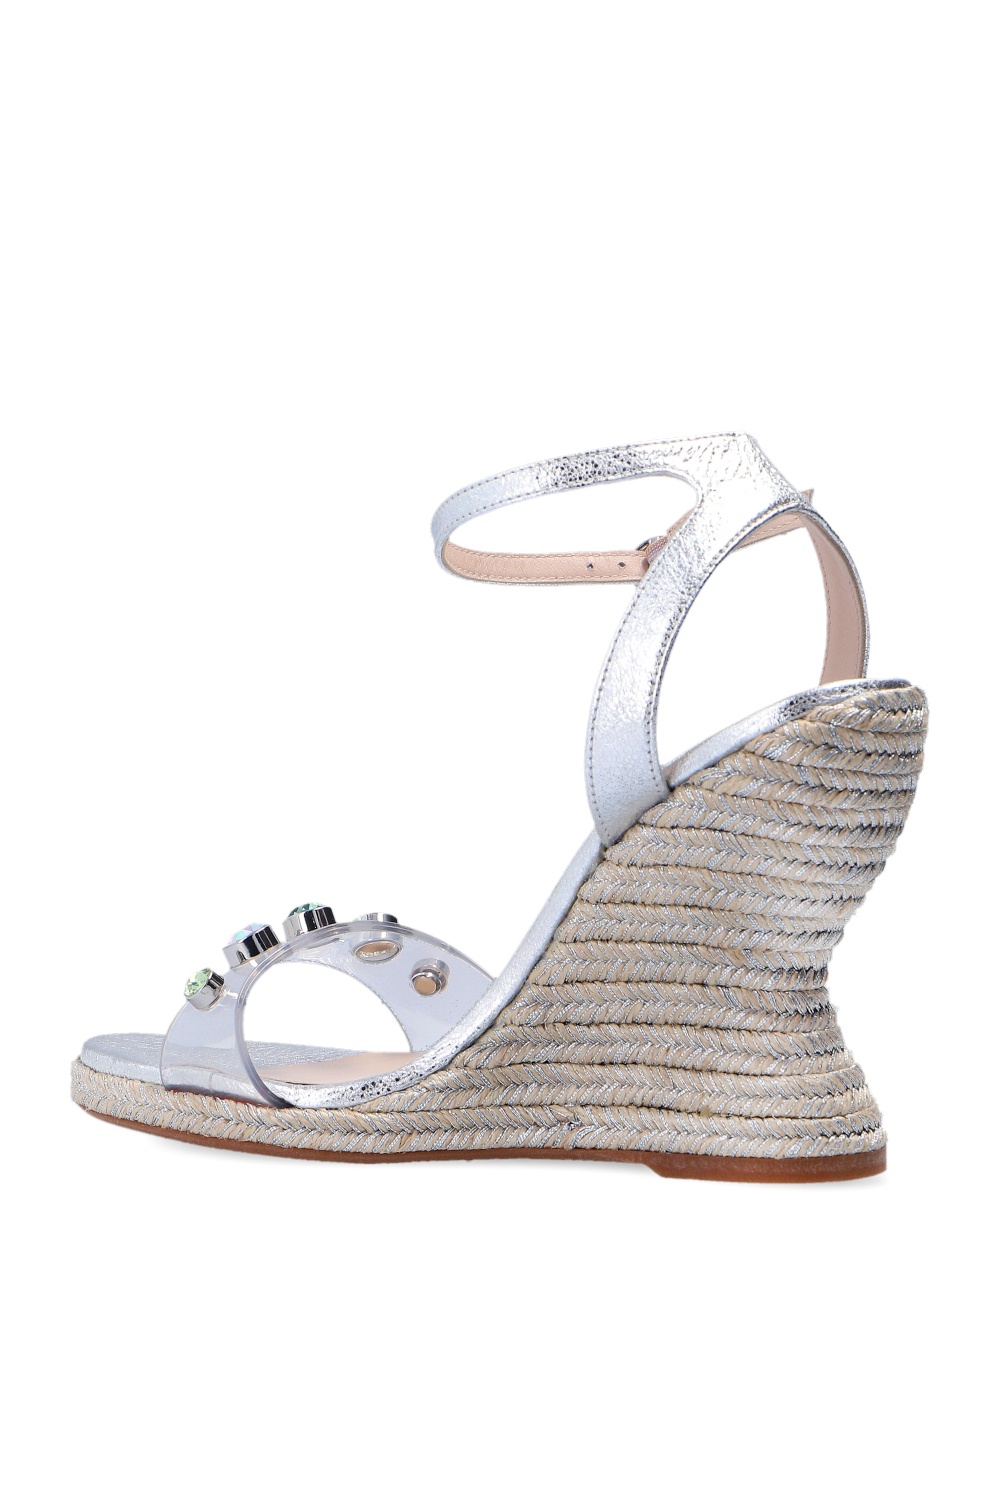 Sophia Webster ‘Dina’ wedge sandals